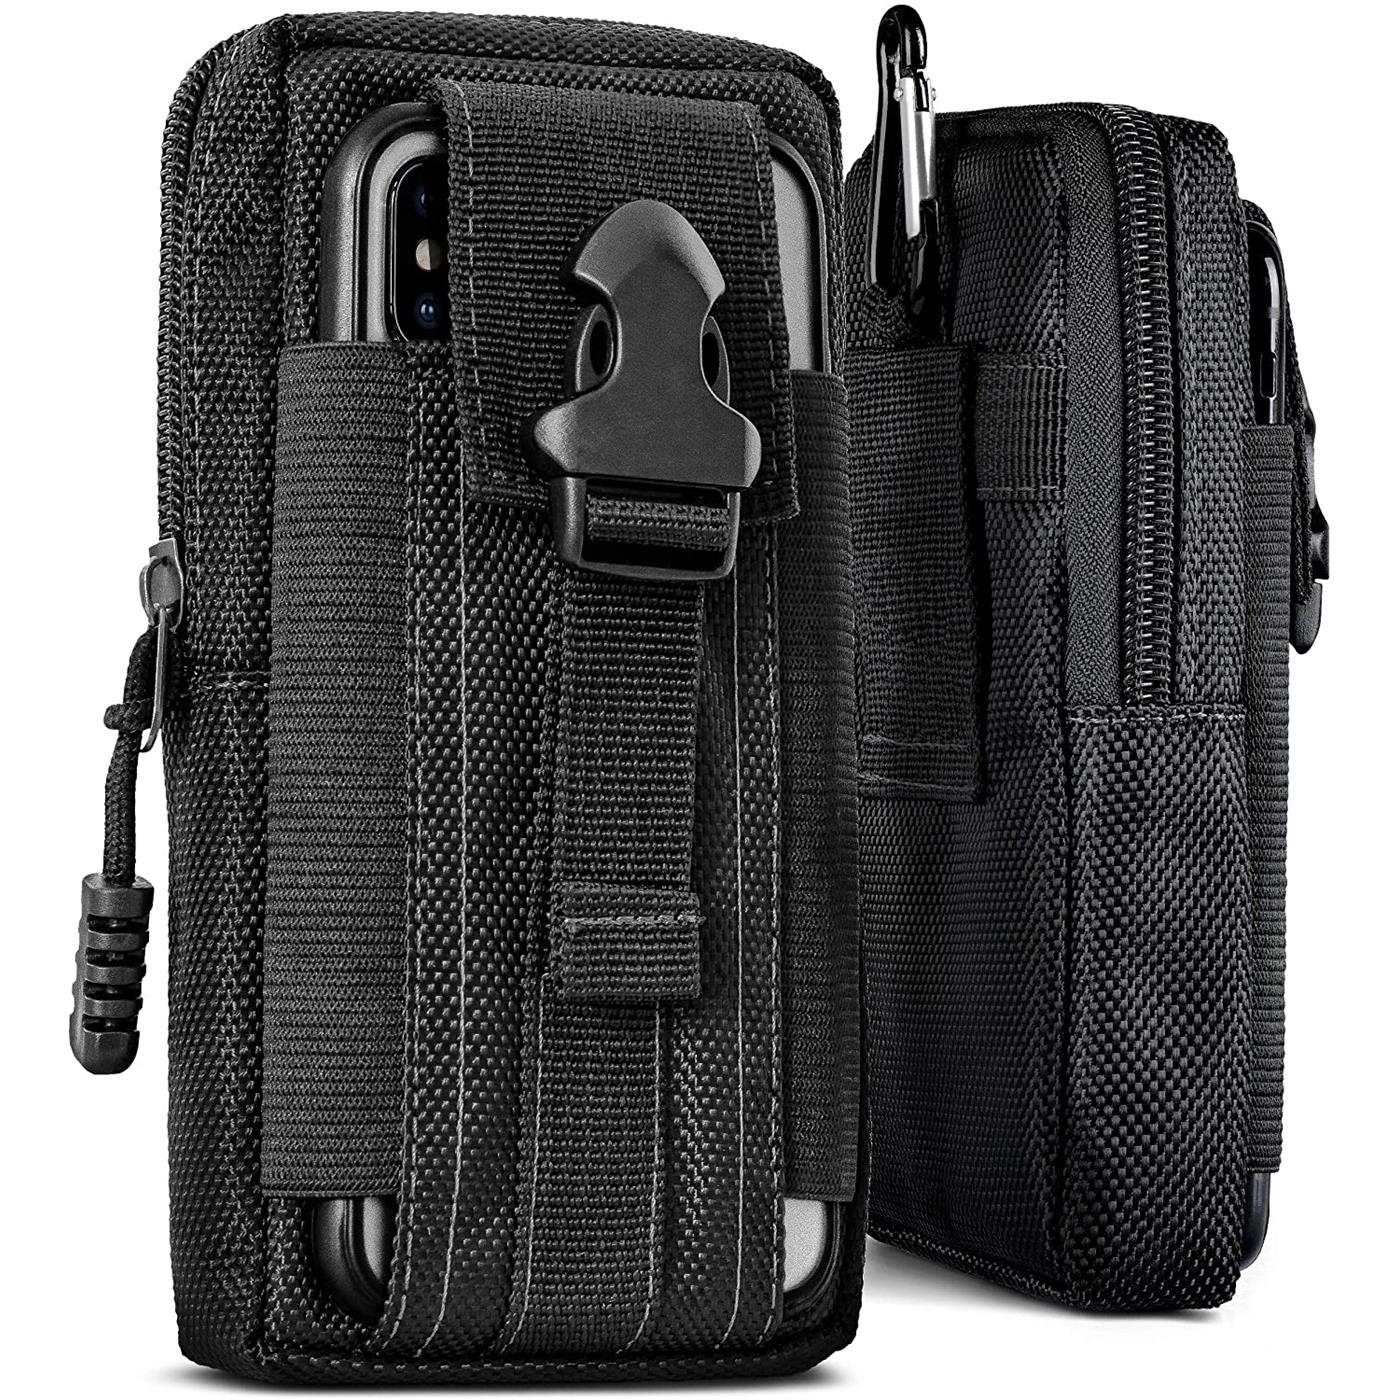 Indexbild 3 - Gürtel Tasche Für Xiaomi Modelle Handy Hülle Schutzhülle Case Clip Etui Nylon